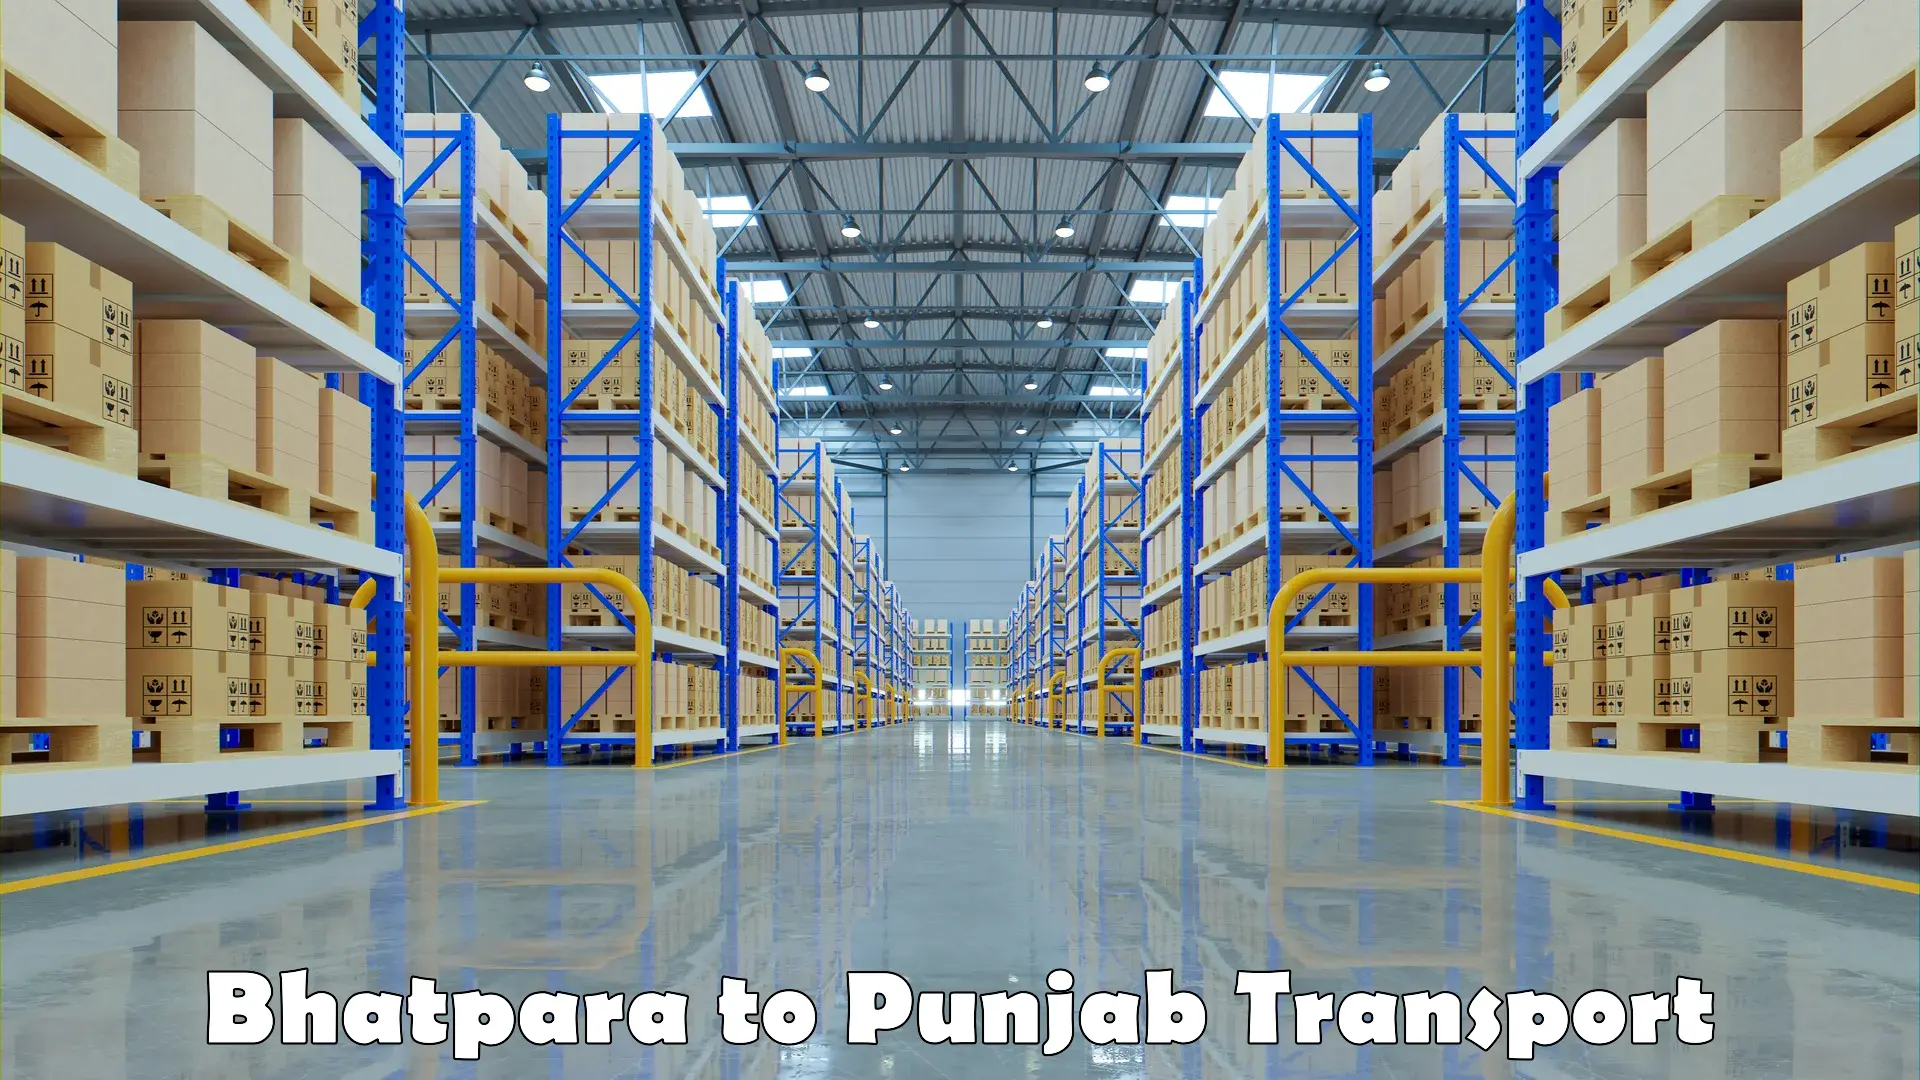 Furniture transport service Bhatpara to Punjab